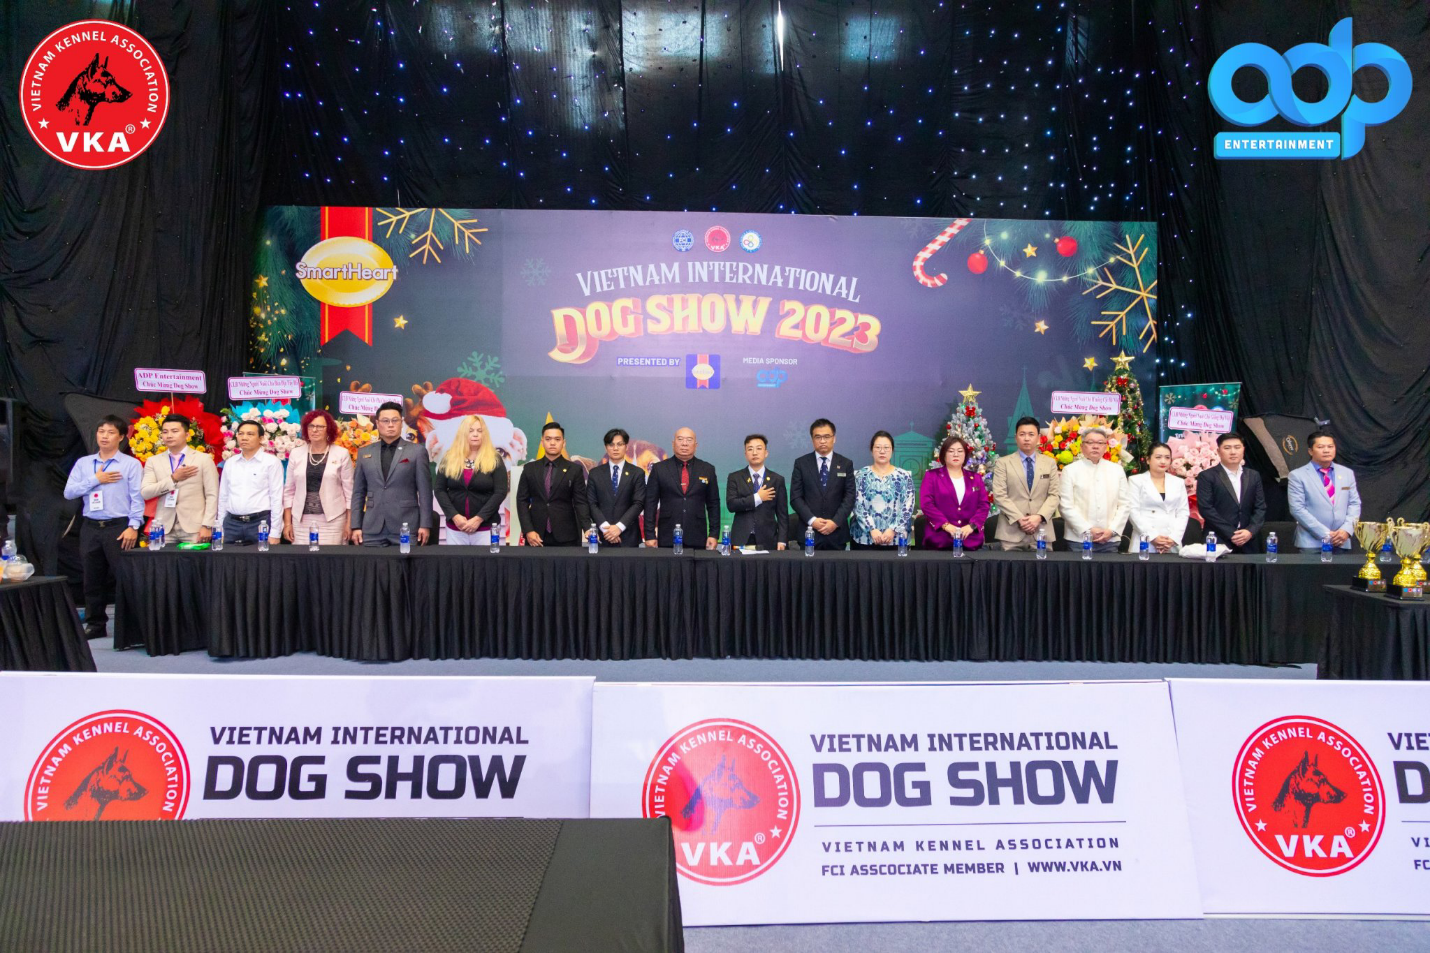 Xã hội - Vietnam International Dog Show 2023 - Hiệp hội Những Người Nuôi Chó Giống Việt Nam (VKA) với phần trình diễn bùng nổ, bứt phá, mãn nhãn người xem (Hình 4).